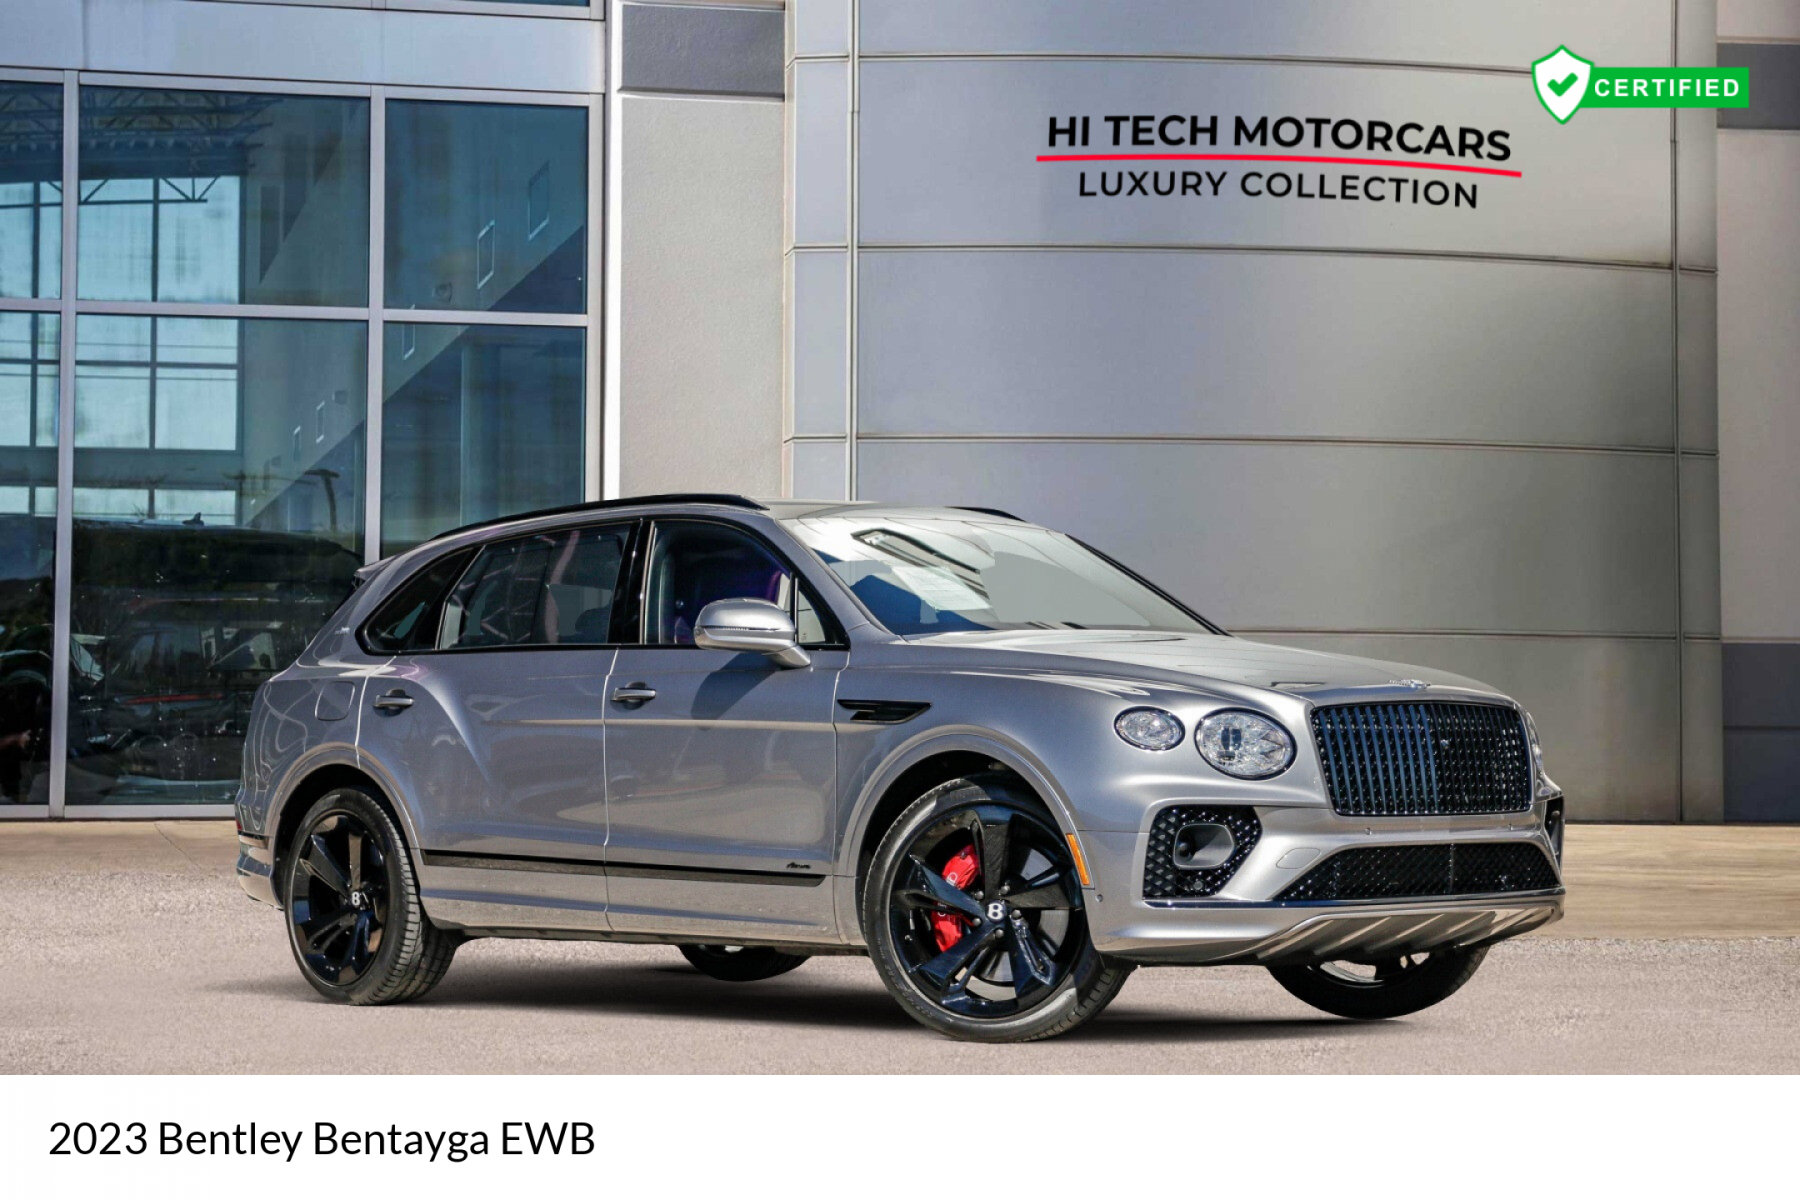 2023 Bentley Bentayga Extended Wheelbase